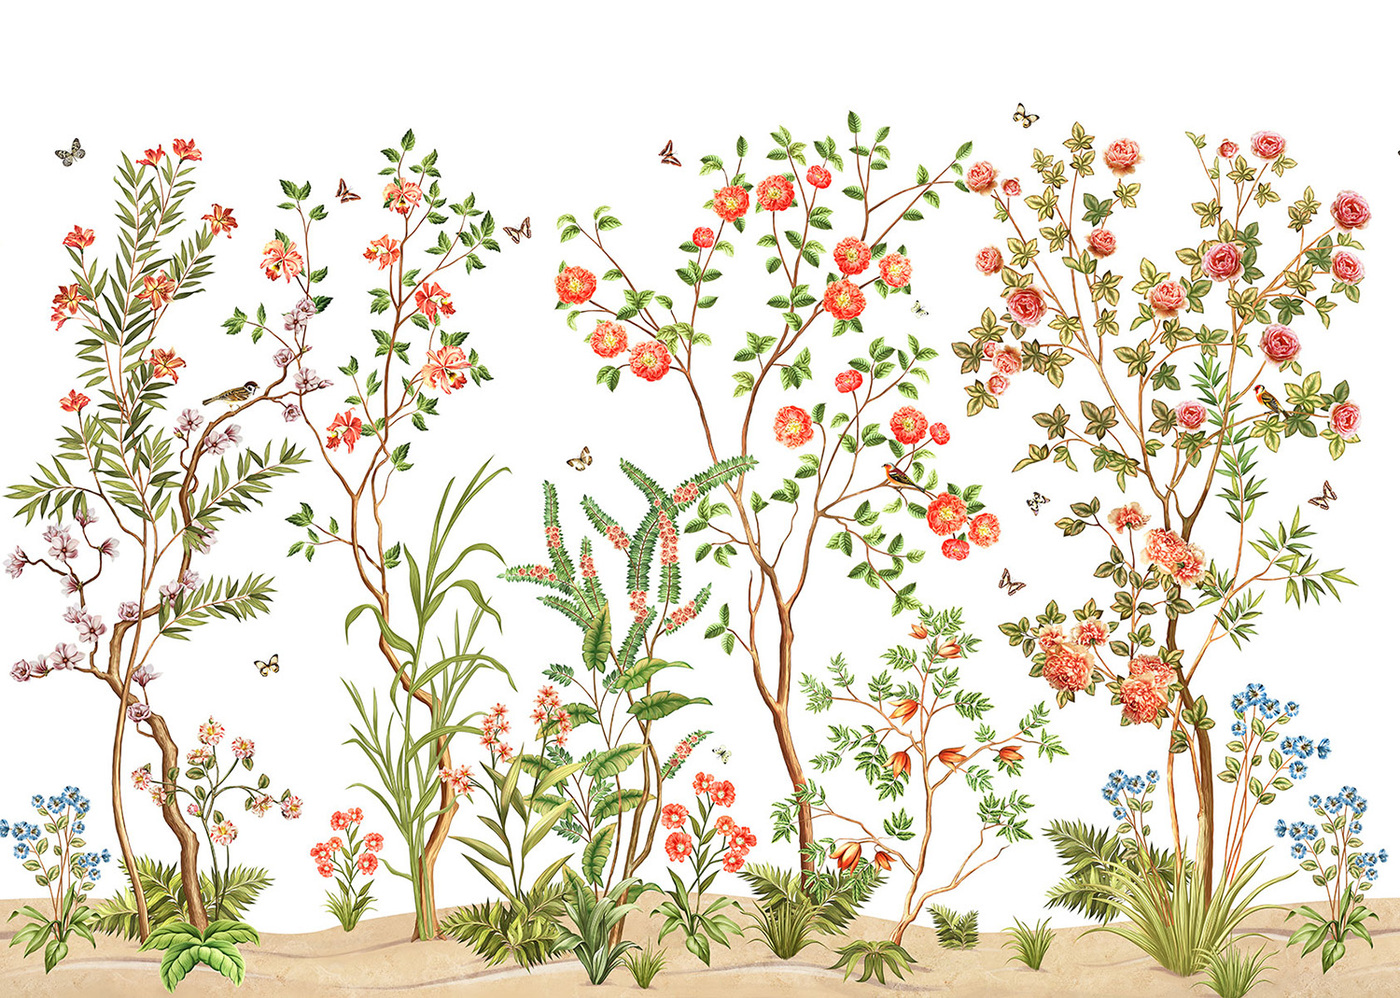 Сбежавший цветок. Цветочный побег. Фотообои с растительным принтом. Виниловые обои Grandeco vr4006. Поле цветов обои на стену артикул 150-01.